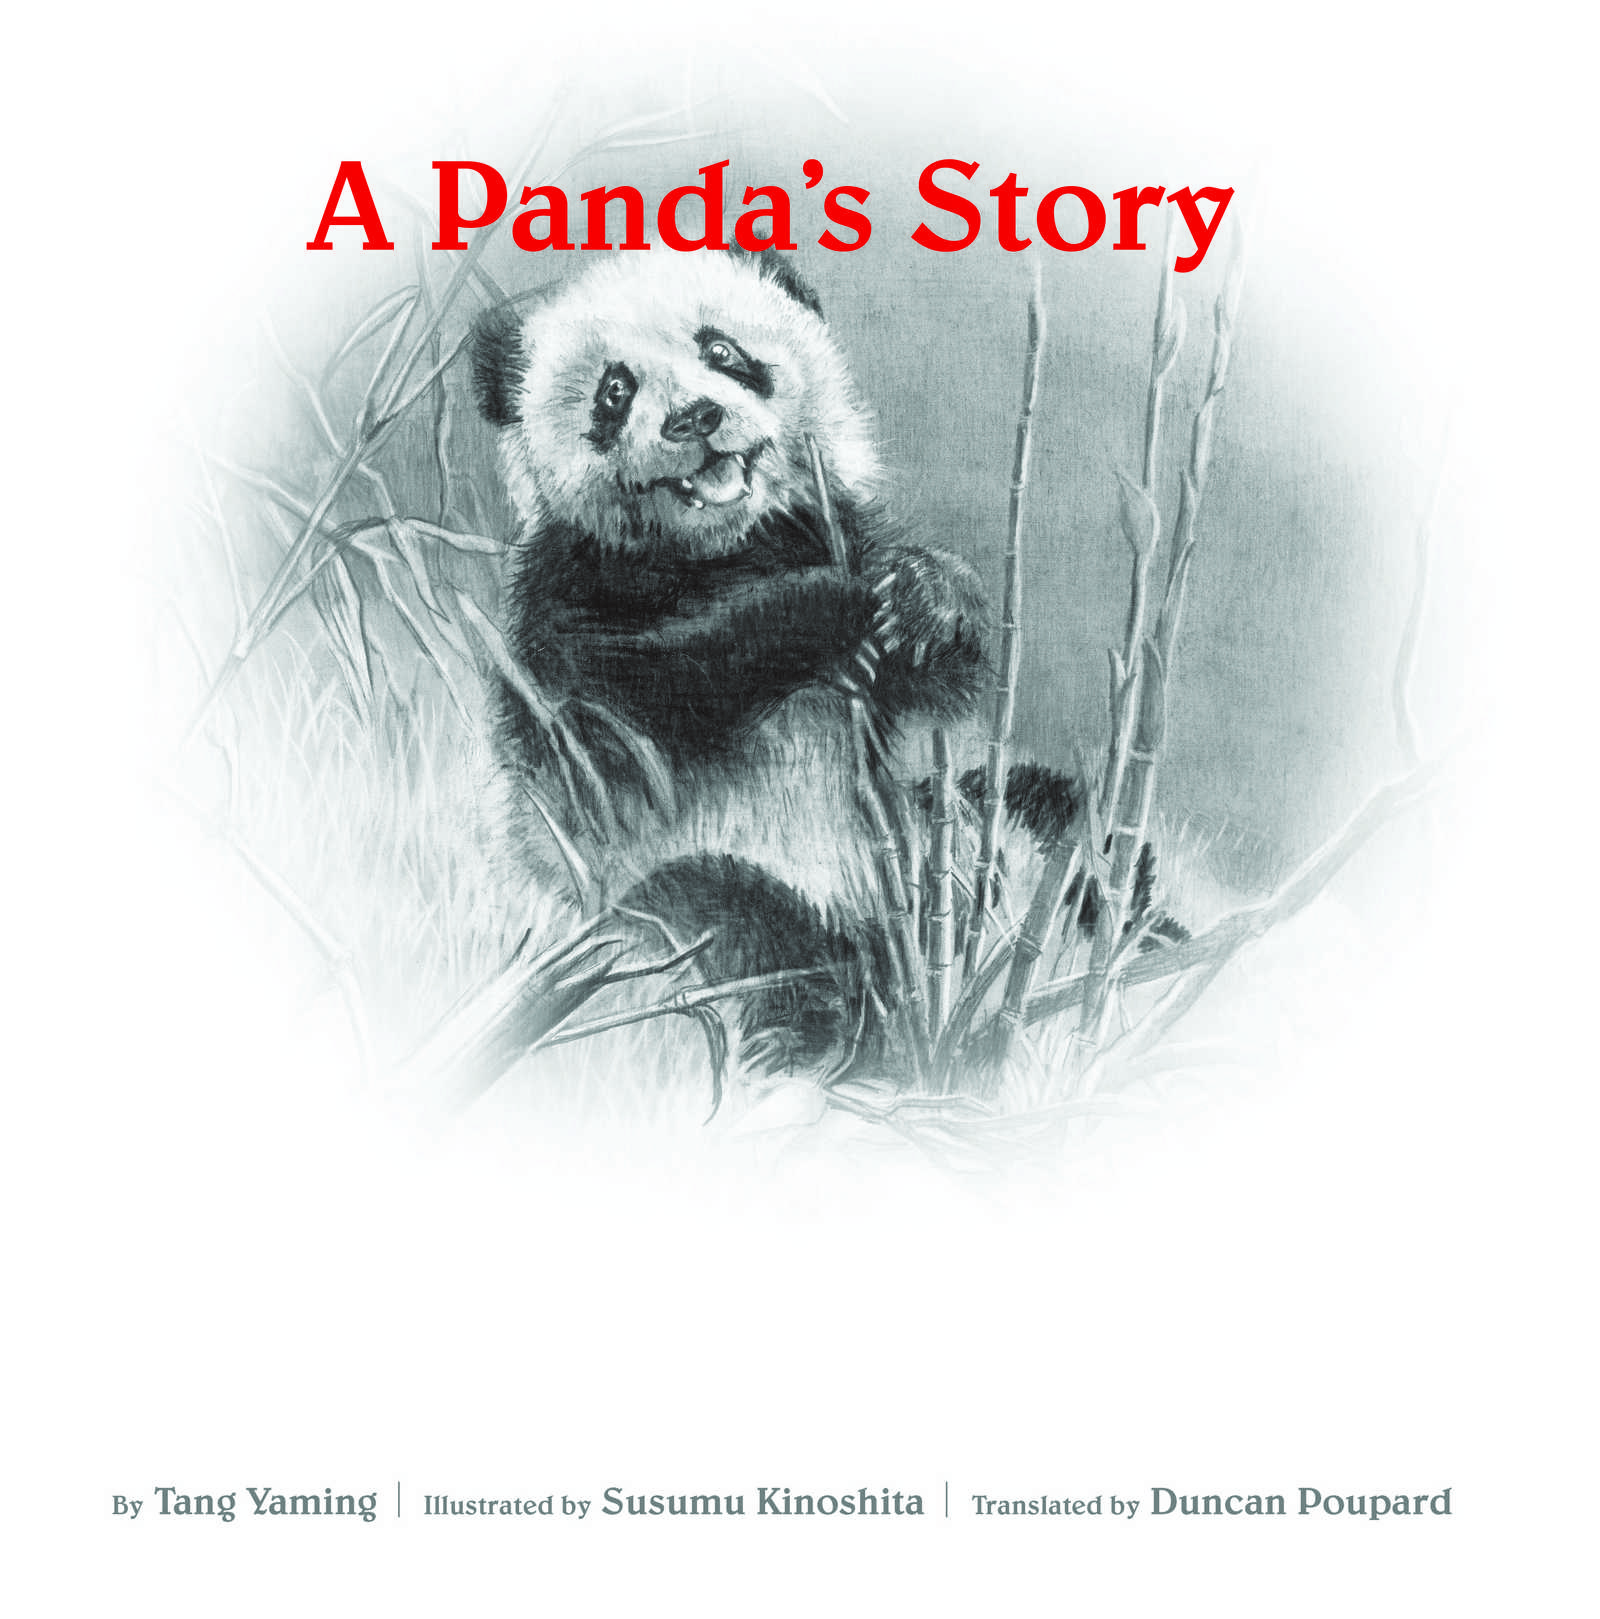 A Panda's Story